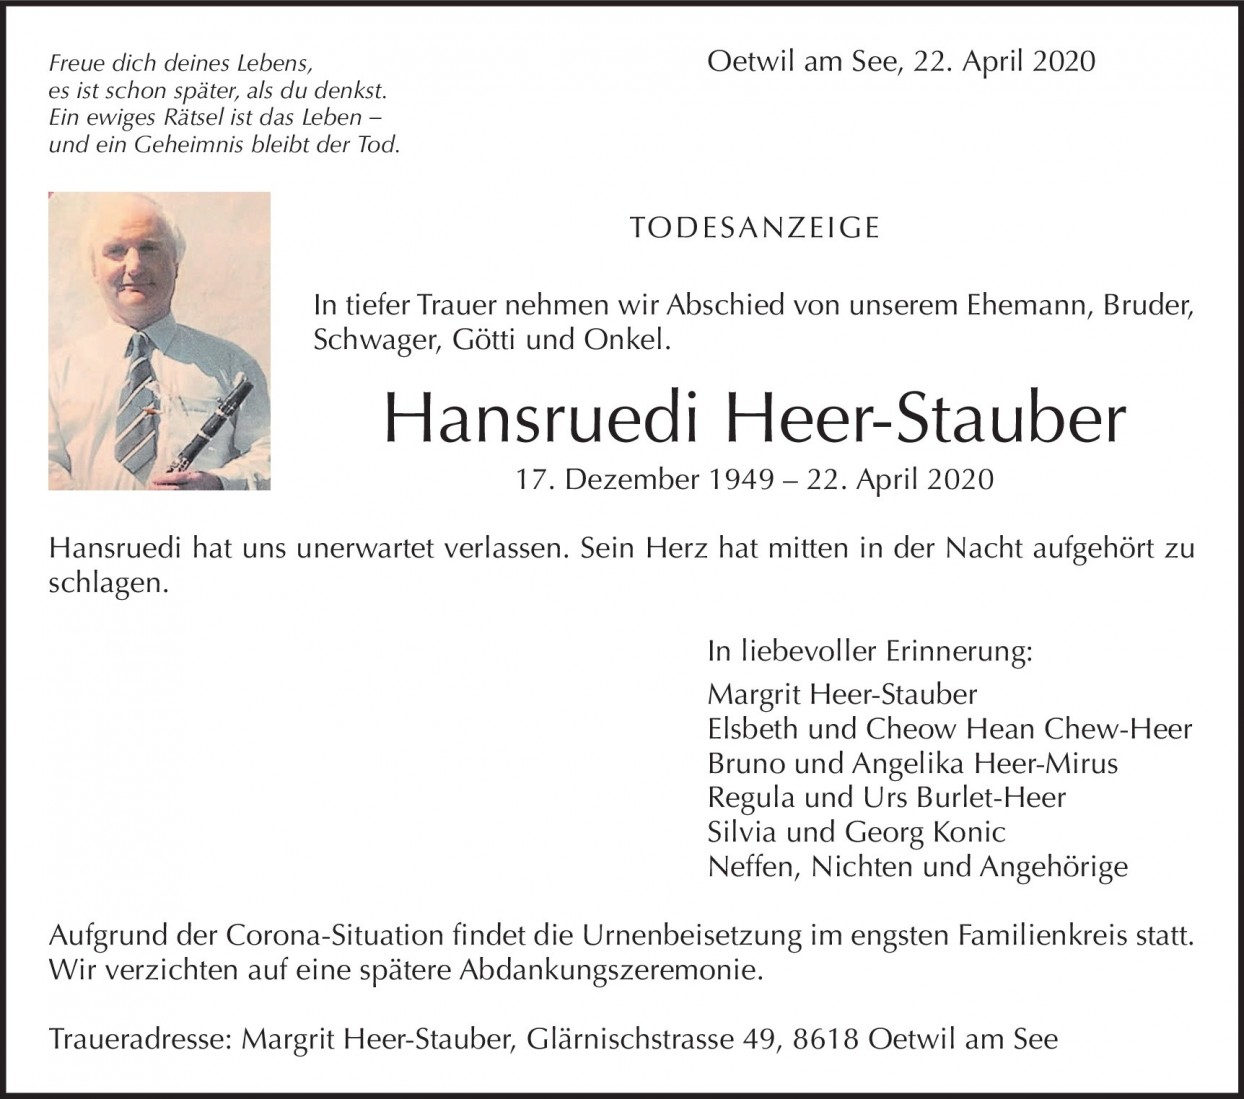 Hansruedi Heer-Stauber